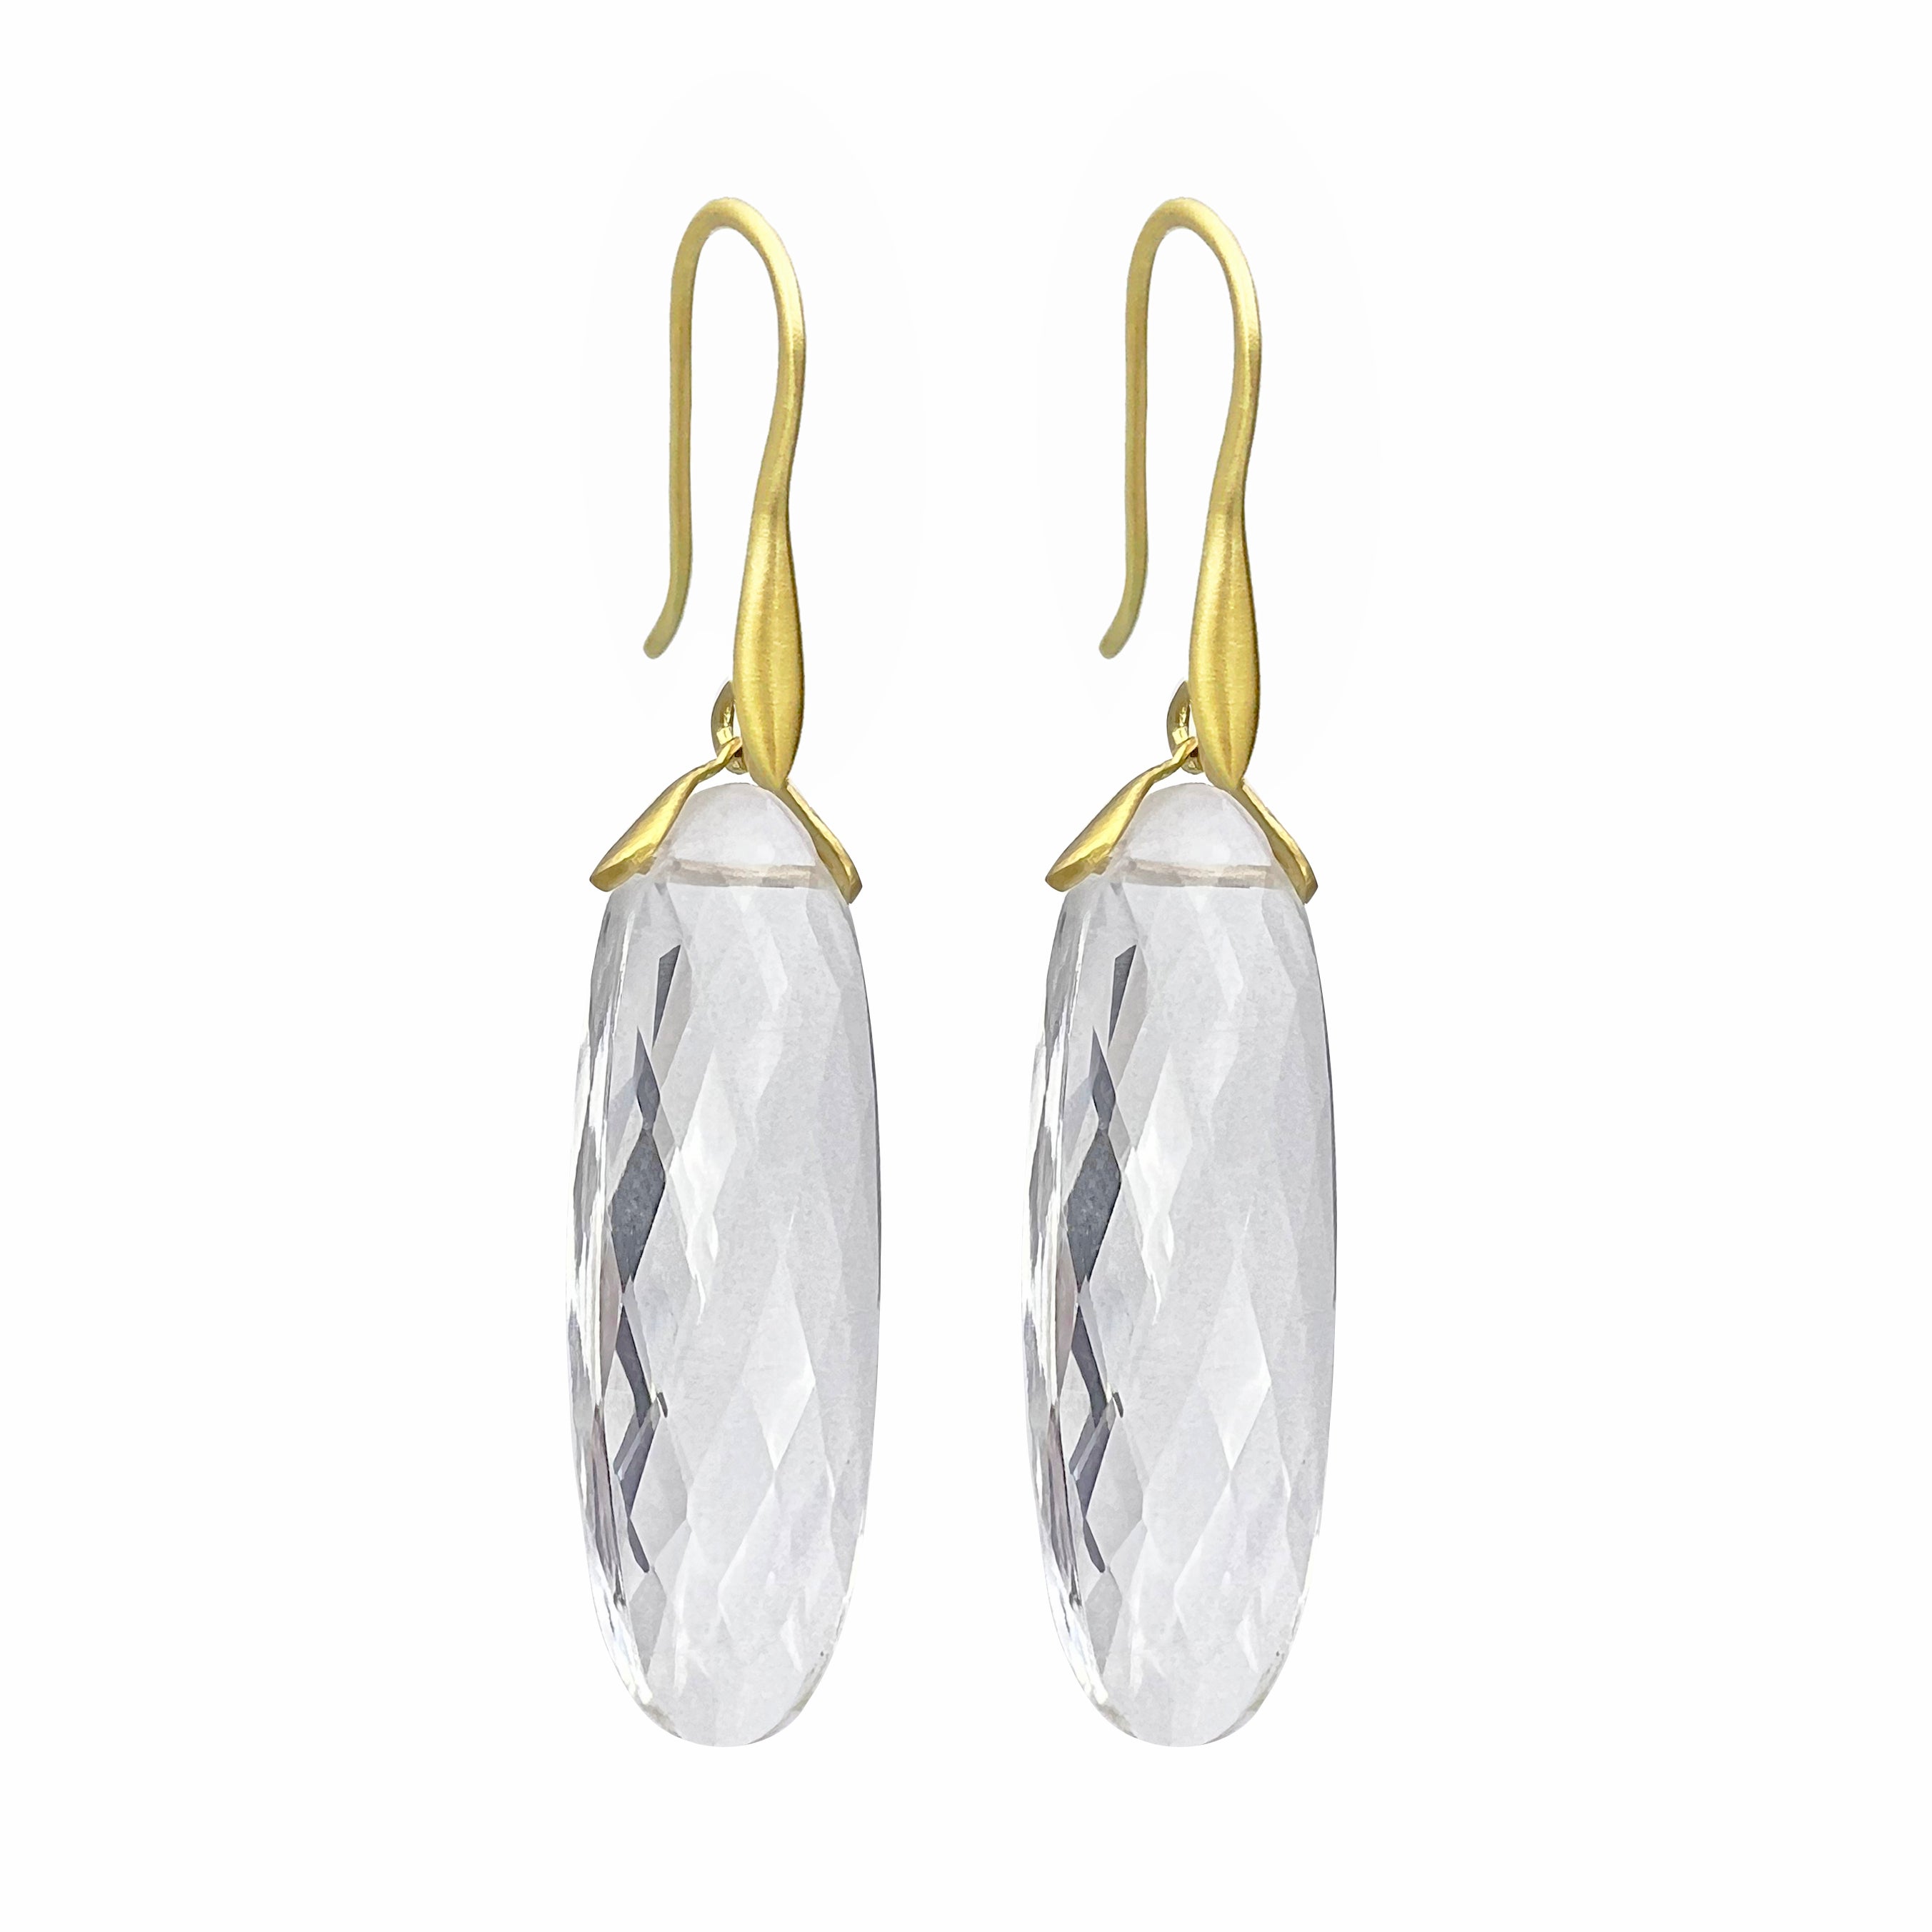 Oval Rock Crystal Trapeze Earrings